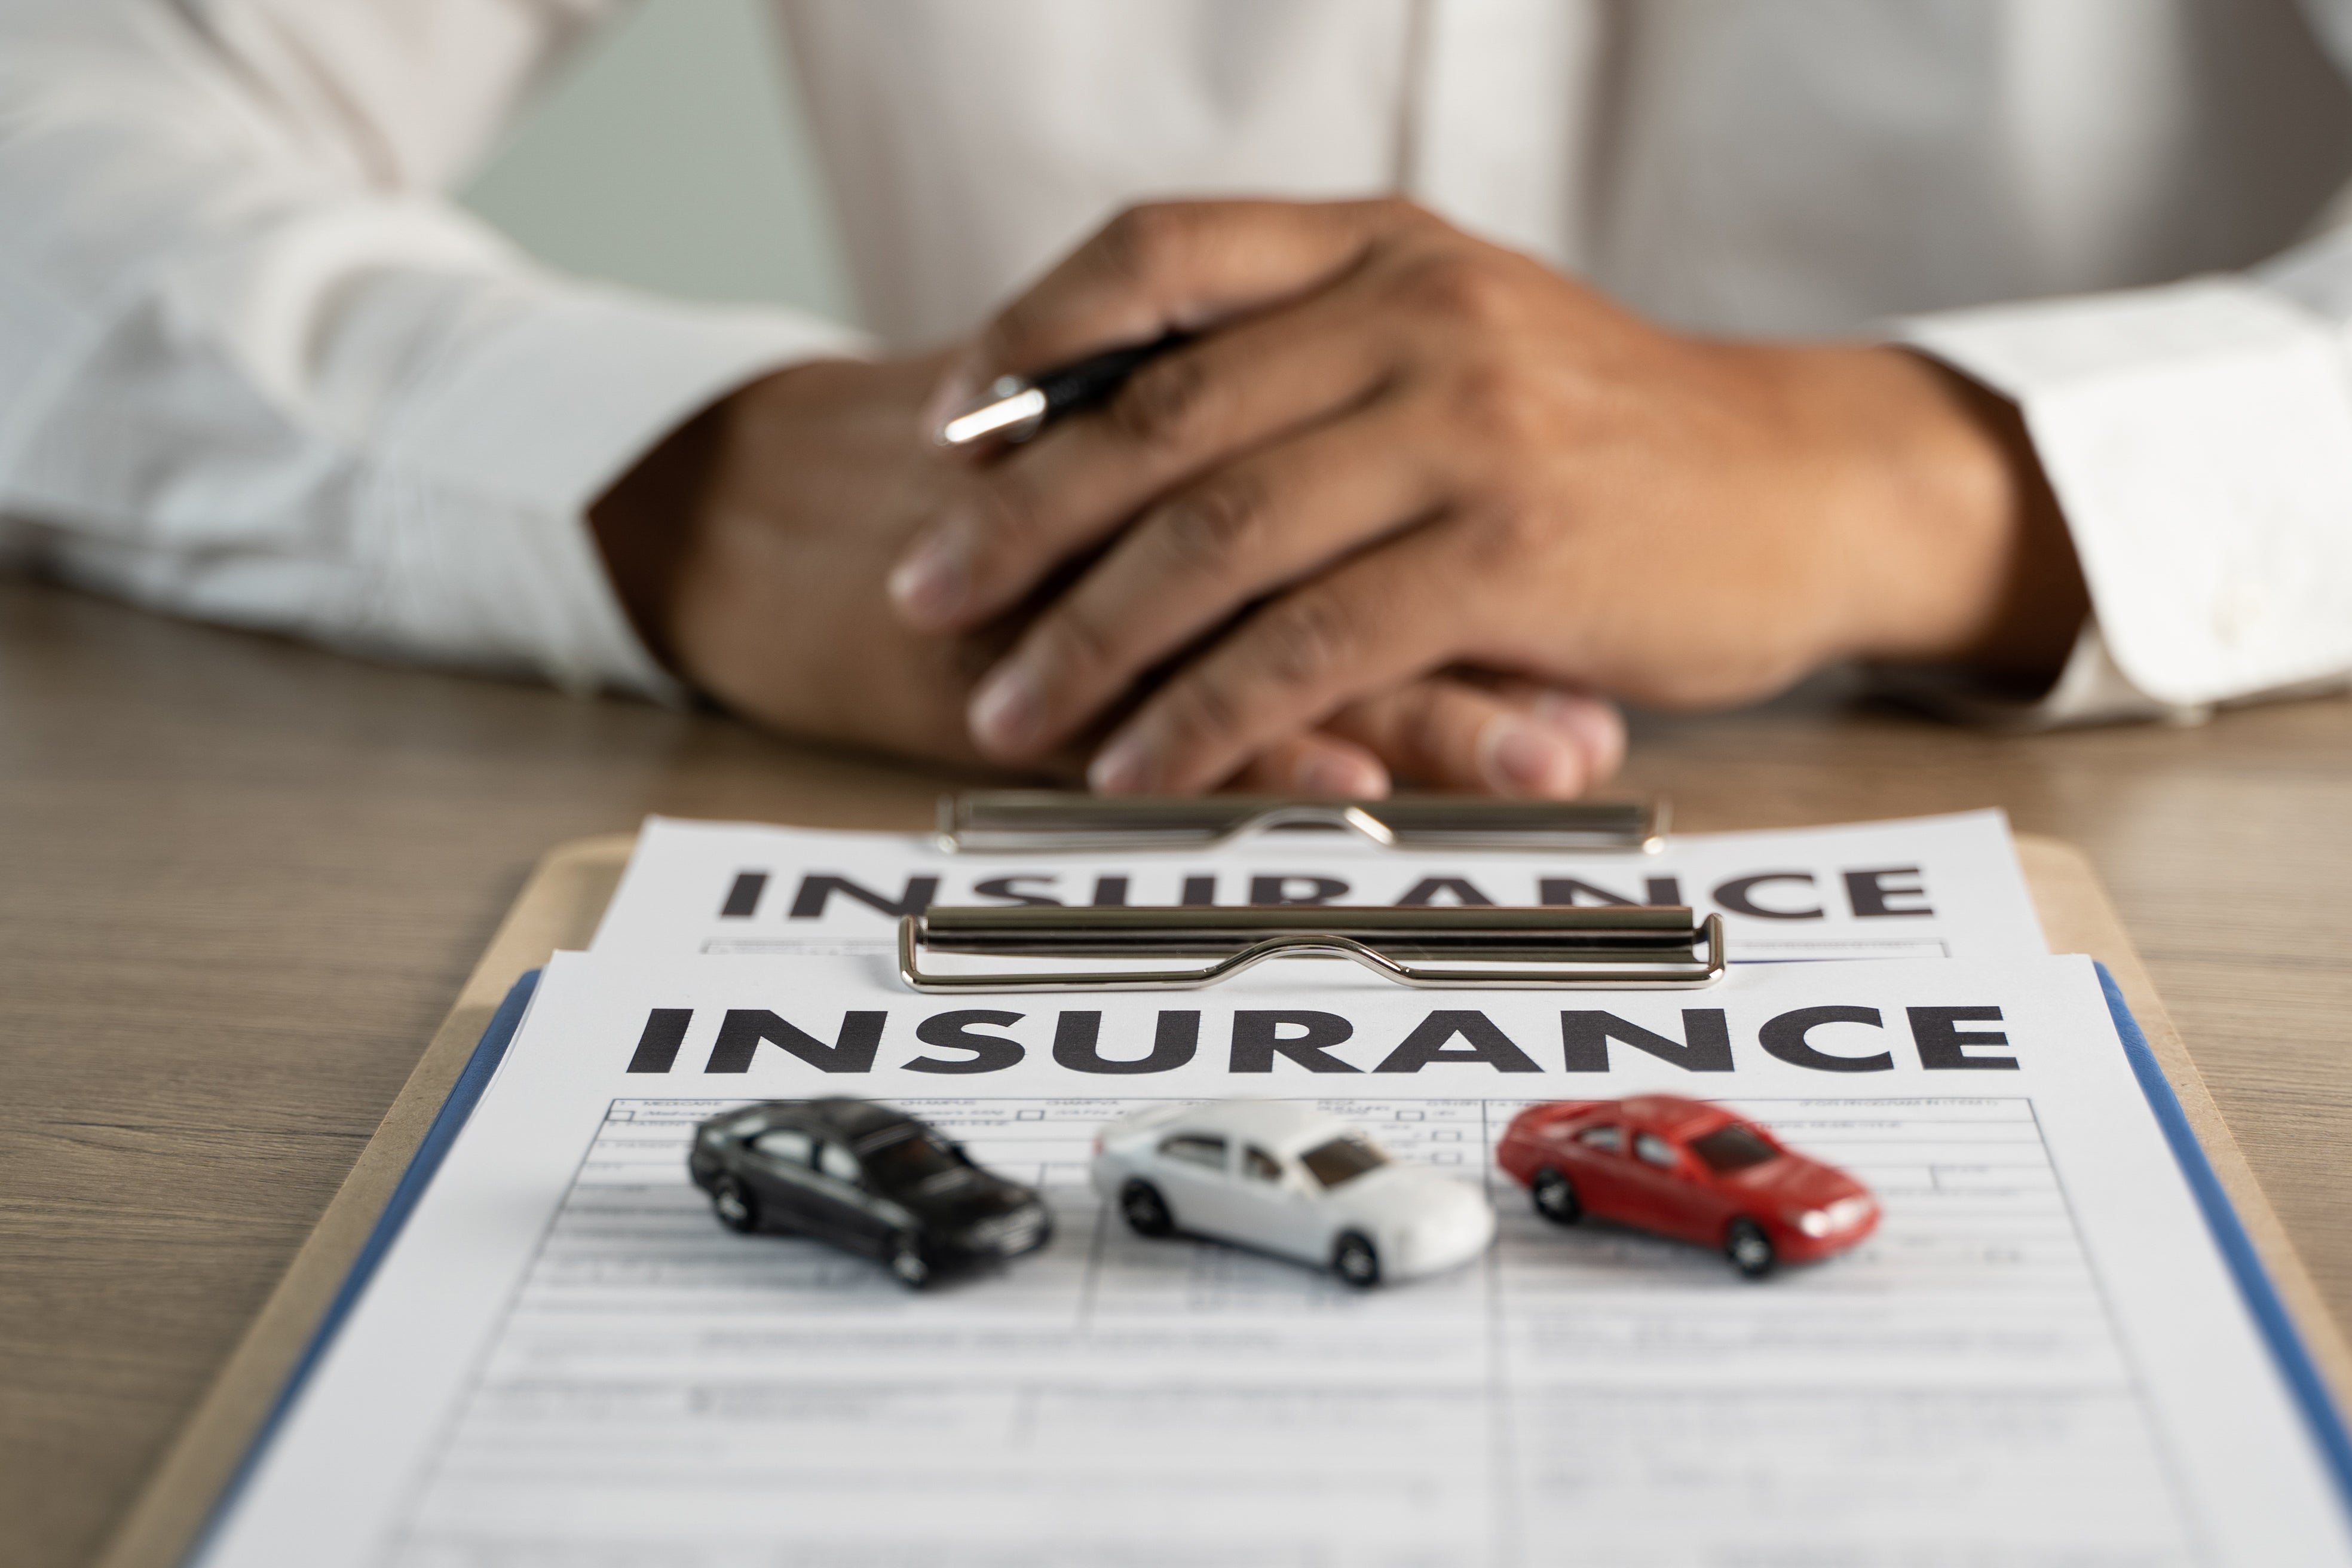 Beginner's Guide To: Car insurance